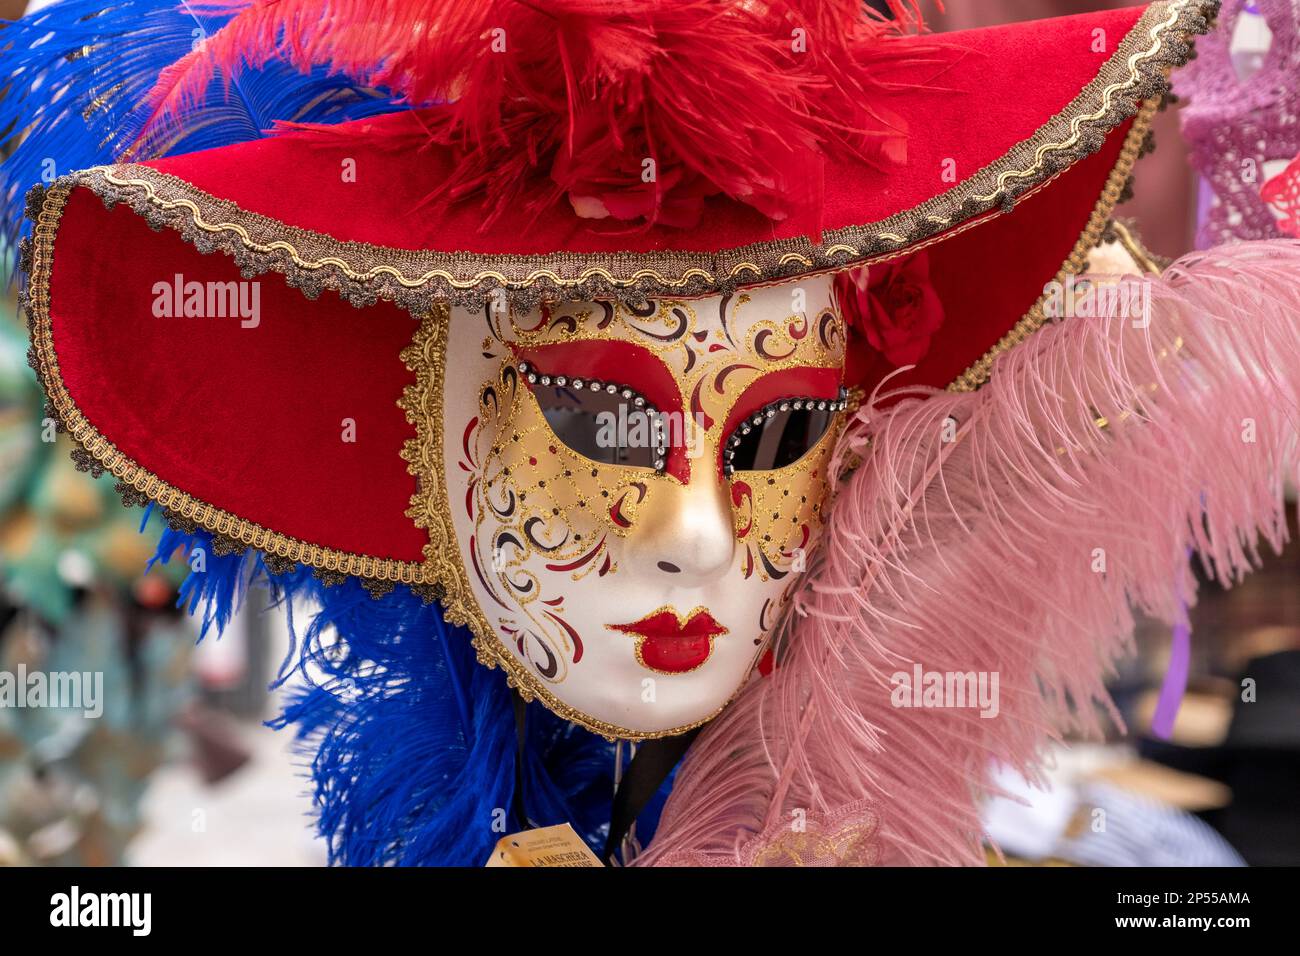 Masque de visage sur un stand de vendeurs de rue, Venise, Italie. Banque D'Images